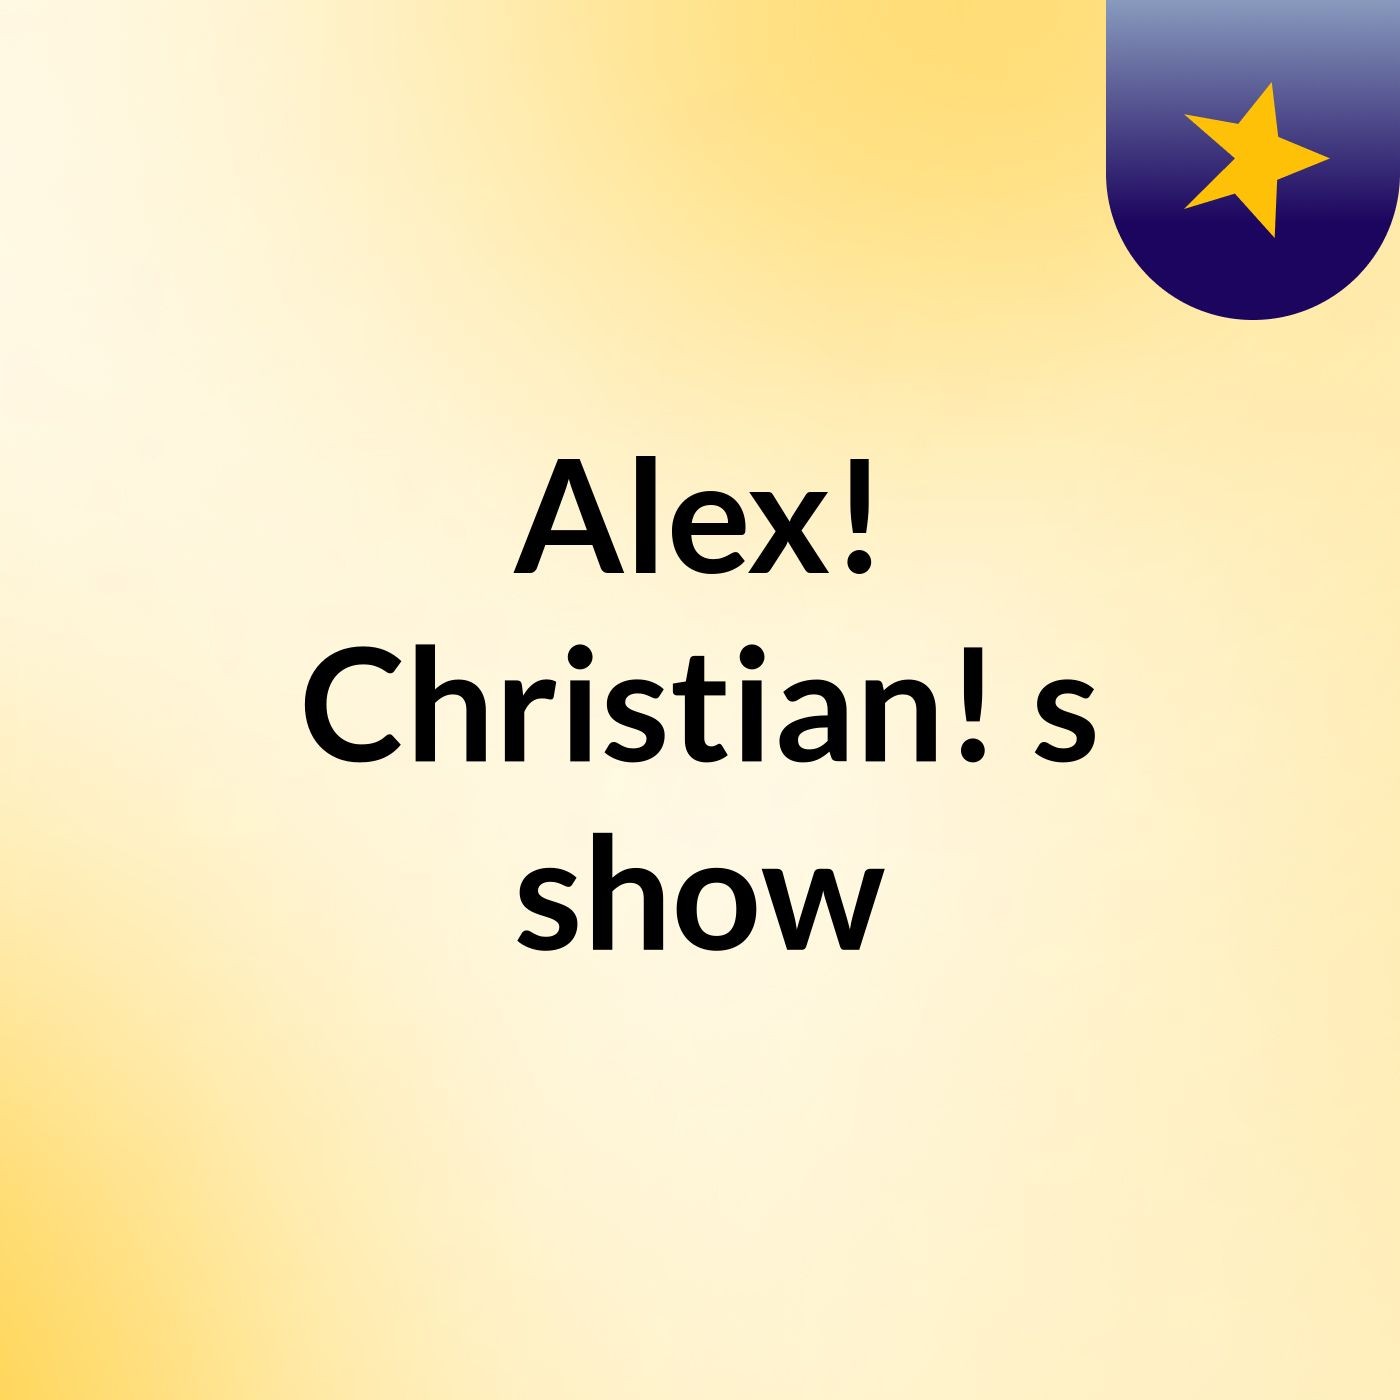 Alex! Christian!'s show